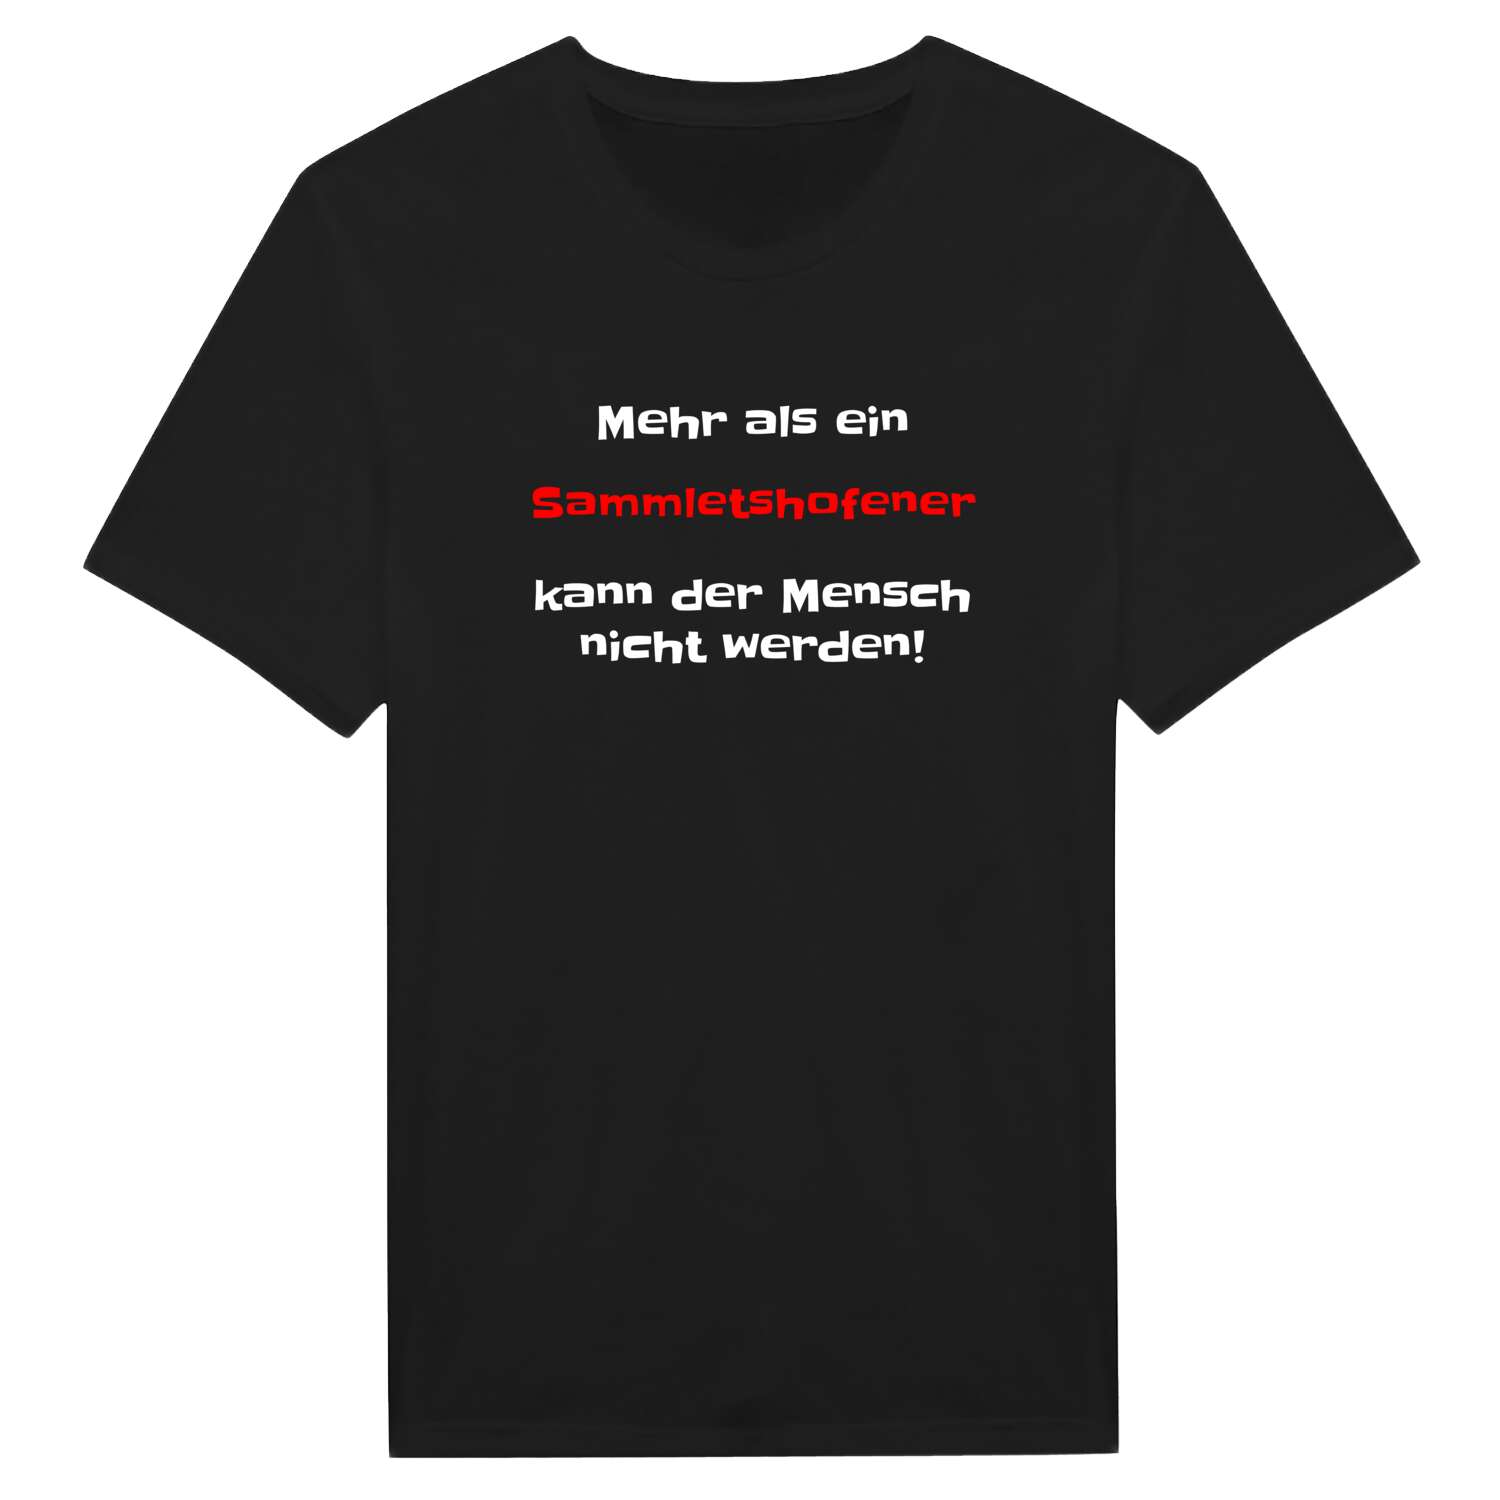 Sammletshofen T-Shirt »Mehr als ein«